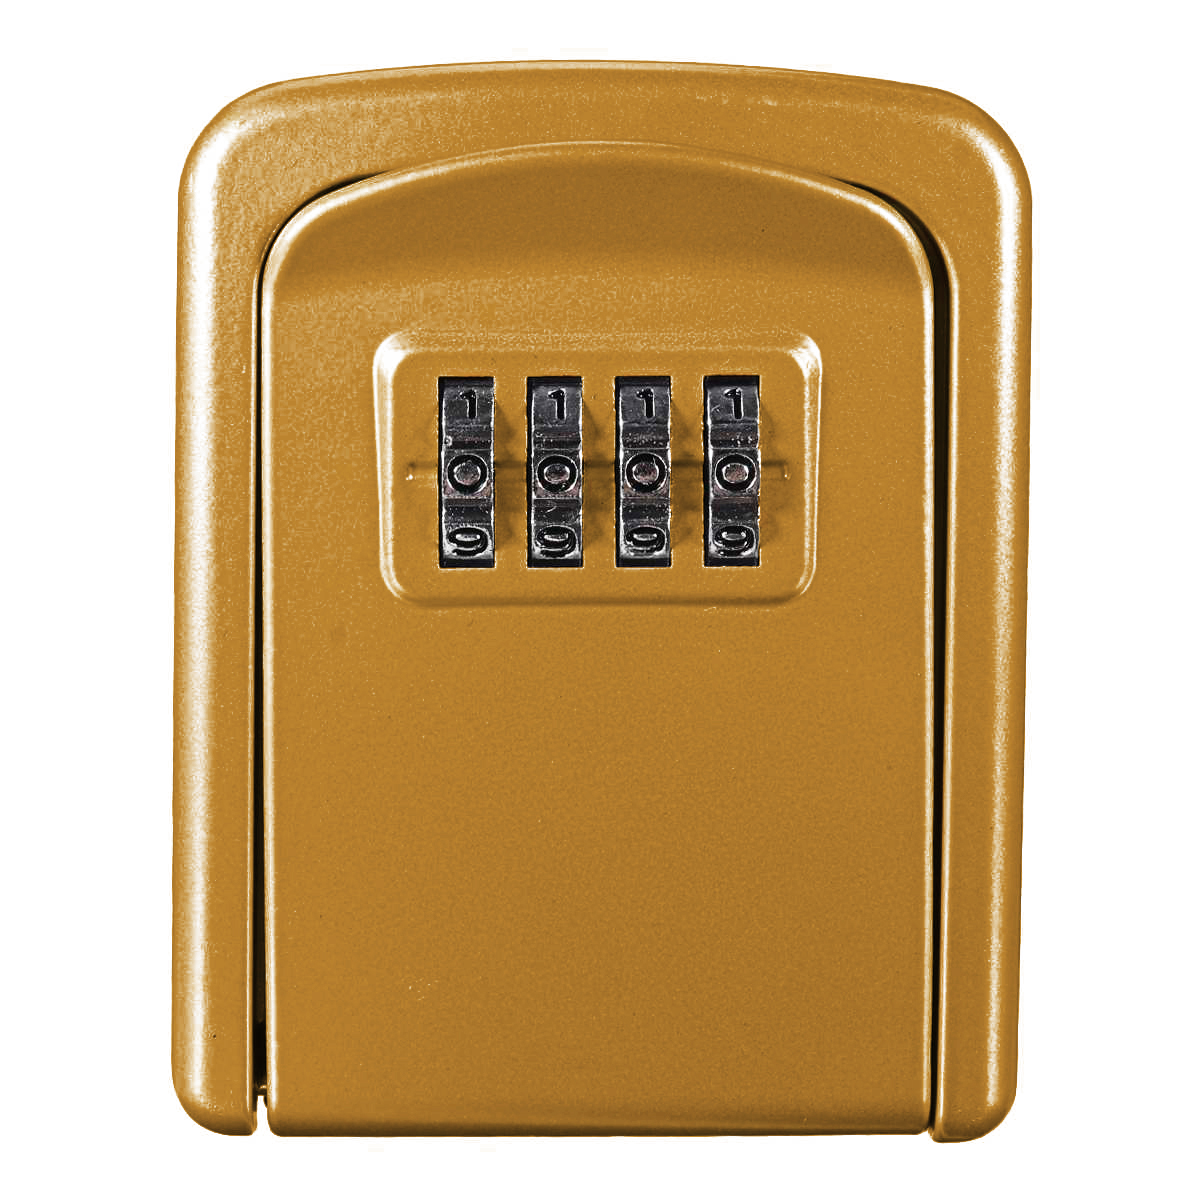 Антивандальний настінний міні сейф Gerui KS-04G для ключів, з кодовим замком, Золотий